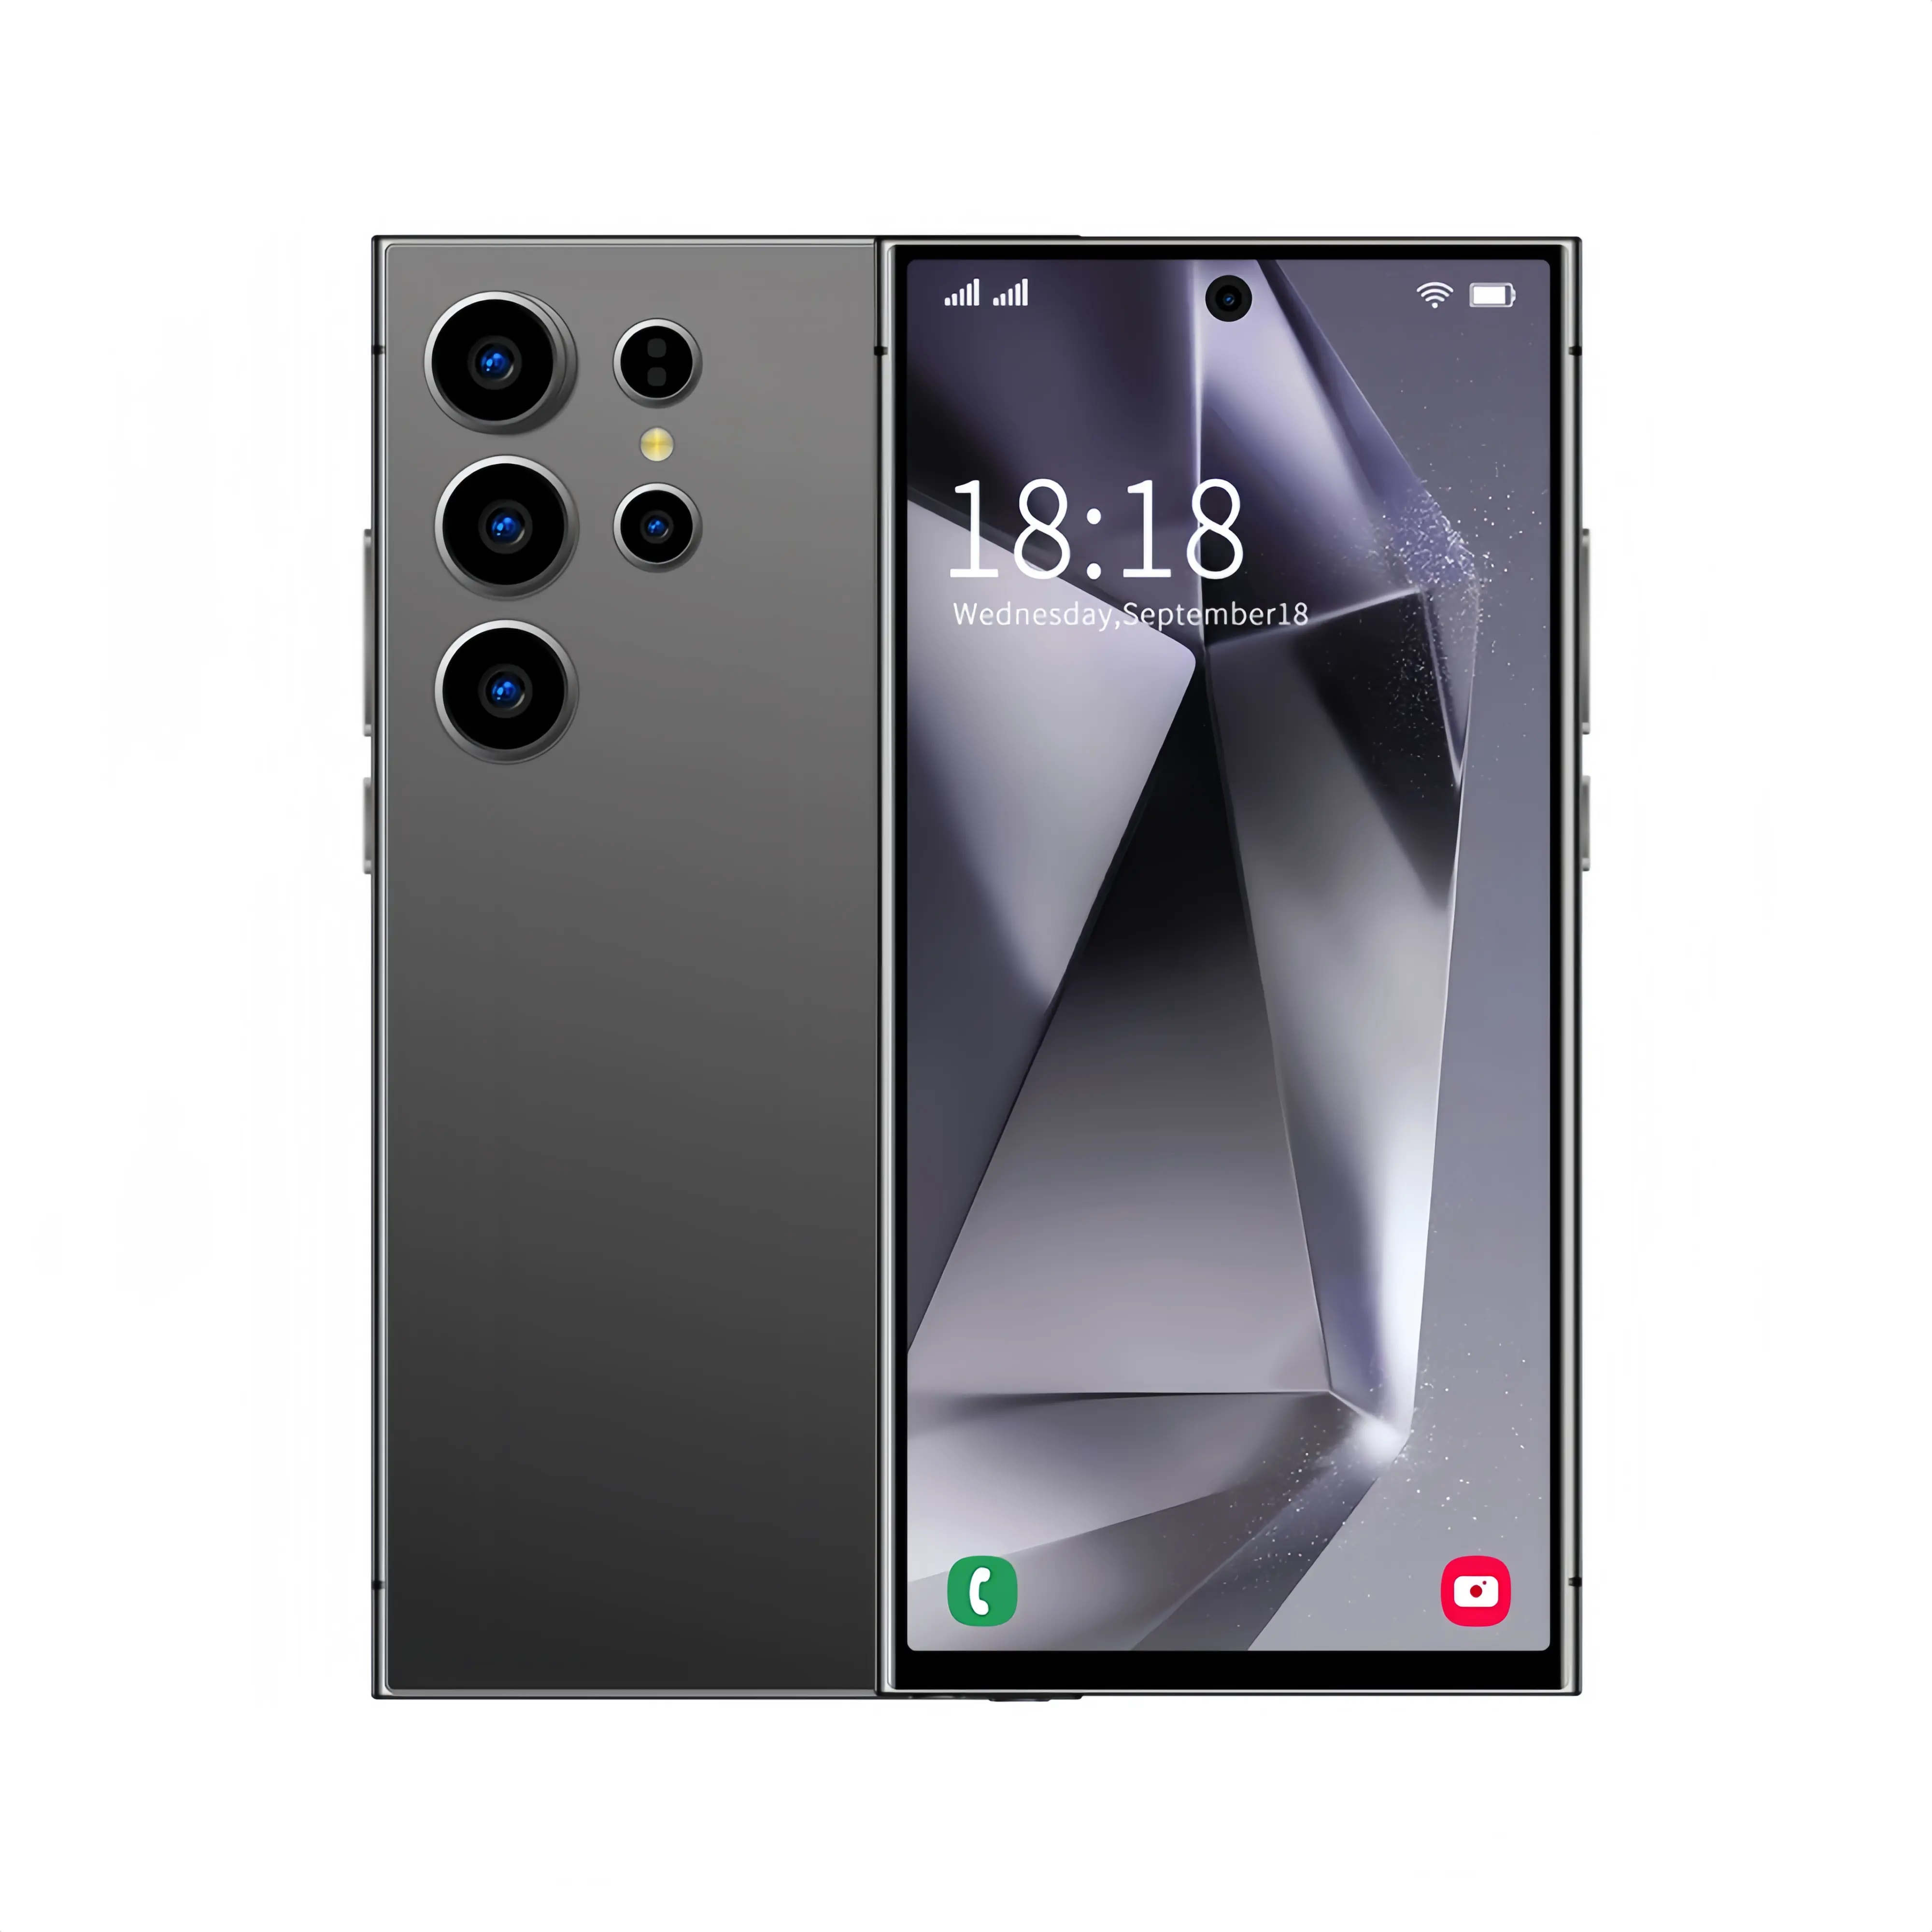 24 अल्ट्रा डुअल सिम डुअल स्टैंडबाय एंड्रॉइड 5जी सेल फोन 6.8एचडी+ डिस्प्ले स्मार्टफोन मोबाइल फोन कैमरा जीपीएस अंग्रेजी